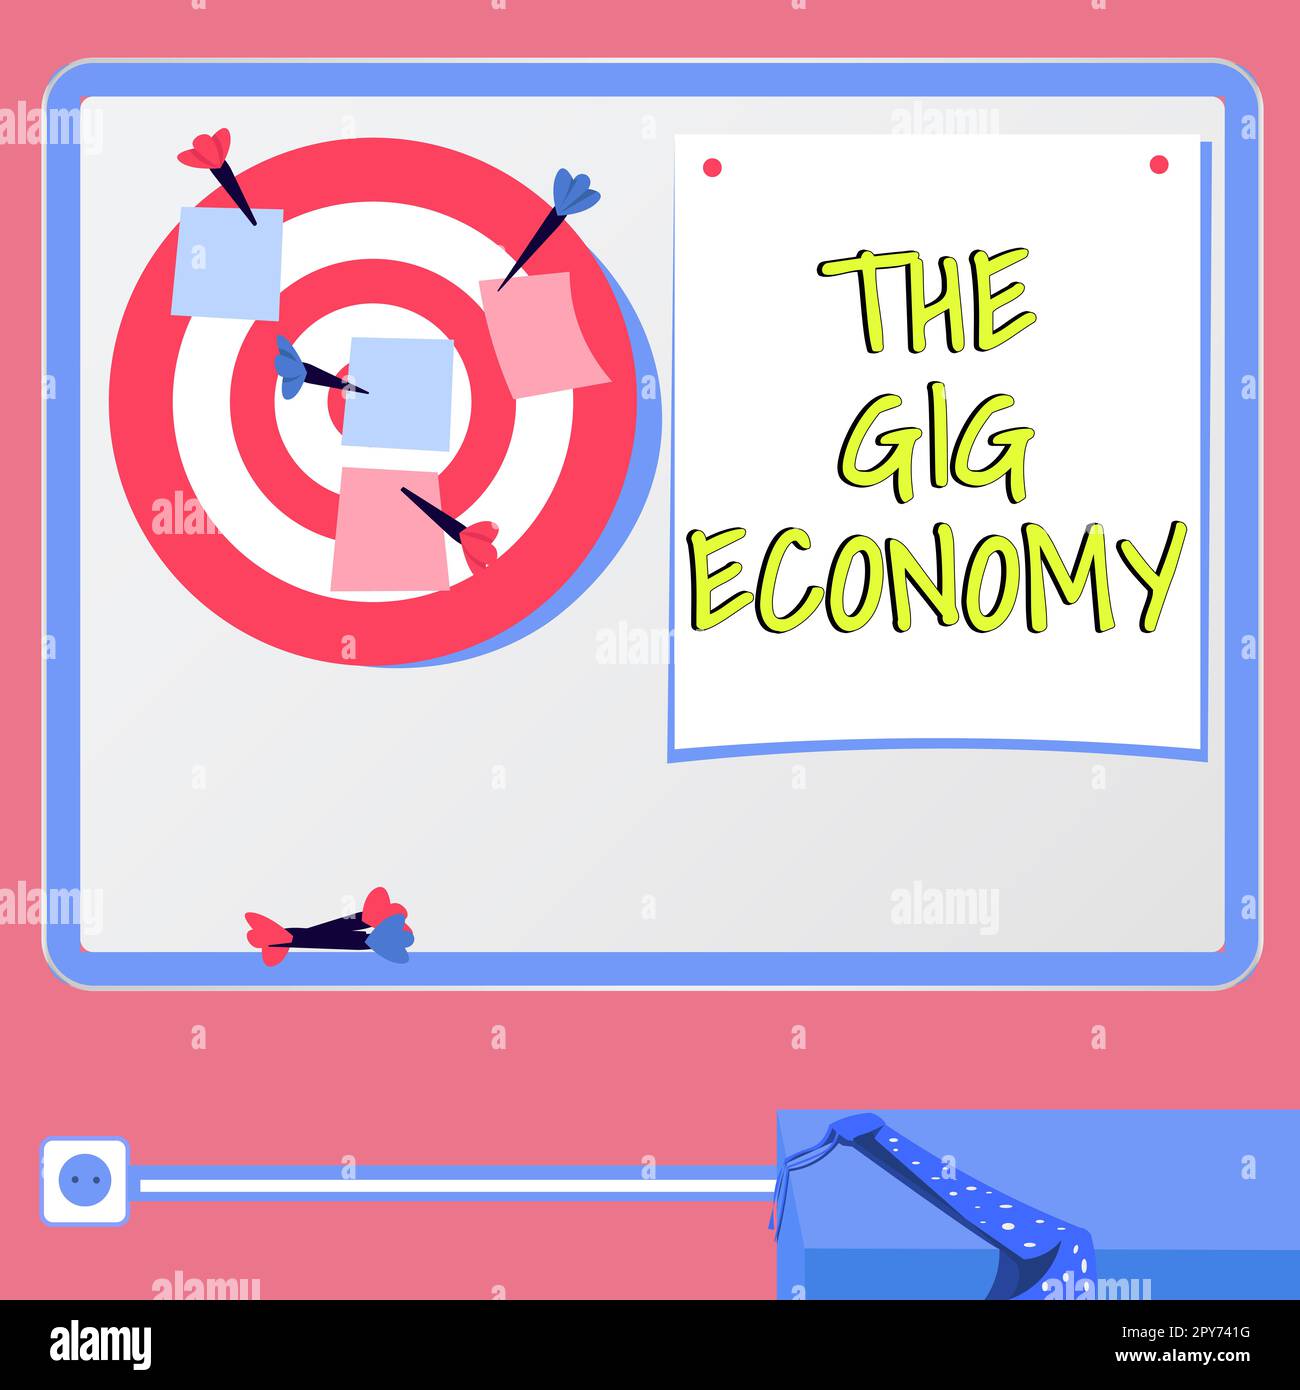 Affichage conceptuel de Gig Economy. Idée d'affaires marché de contrats à court terme travail indépendant temporaire Banque D'Images